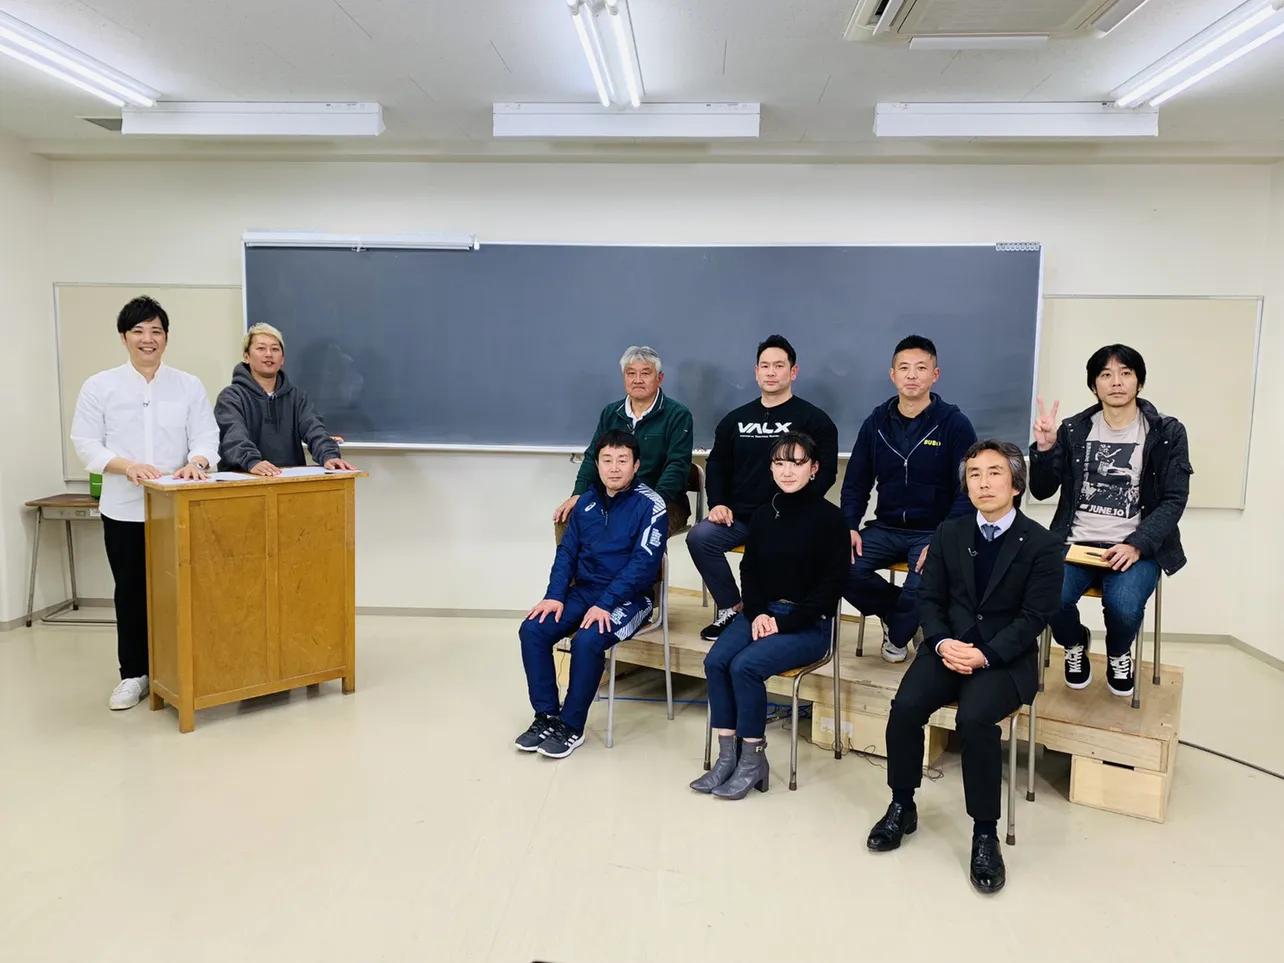 ライセンスがMCを務め、神奈川県で部活に頑張る部員たちに密着する「部活応援プロジェクトしゃかりき！」 の新春スペシャルが放送。指導する側の6人の先生たちに迫る